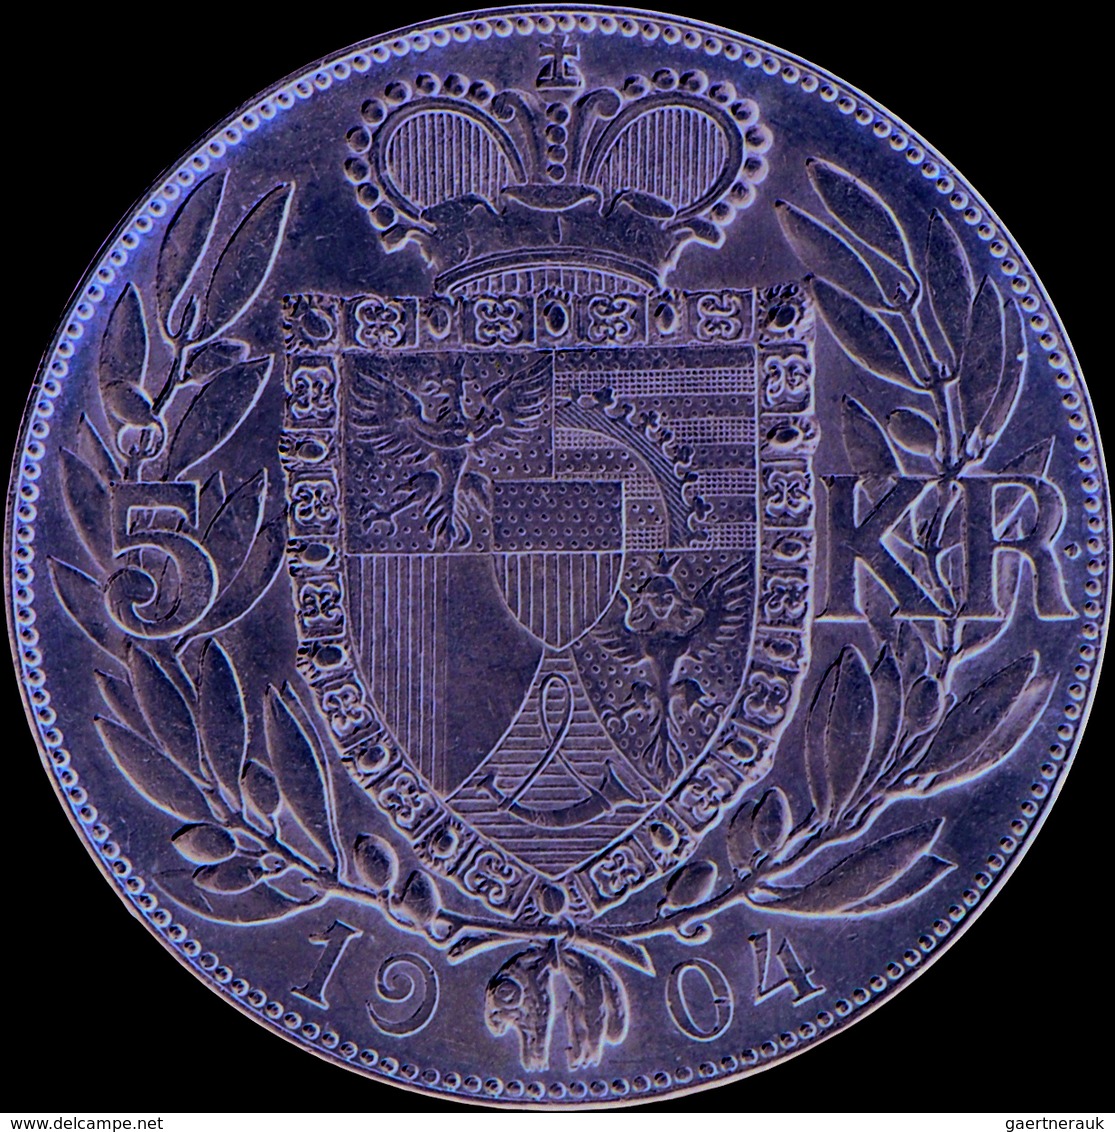 Liechtenstein: Johann II. 1858-1929: 5 Kronen 1904, Dav. 216, HMZ 2-1376c, Auflage 15.000 Expl., Min - Liechtenstein